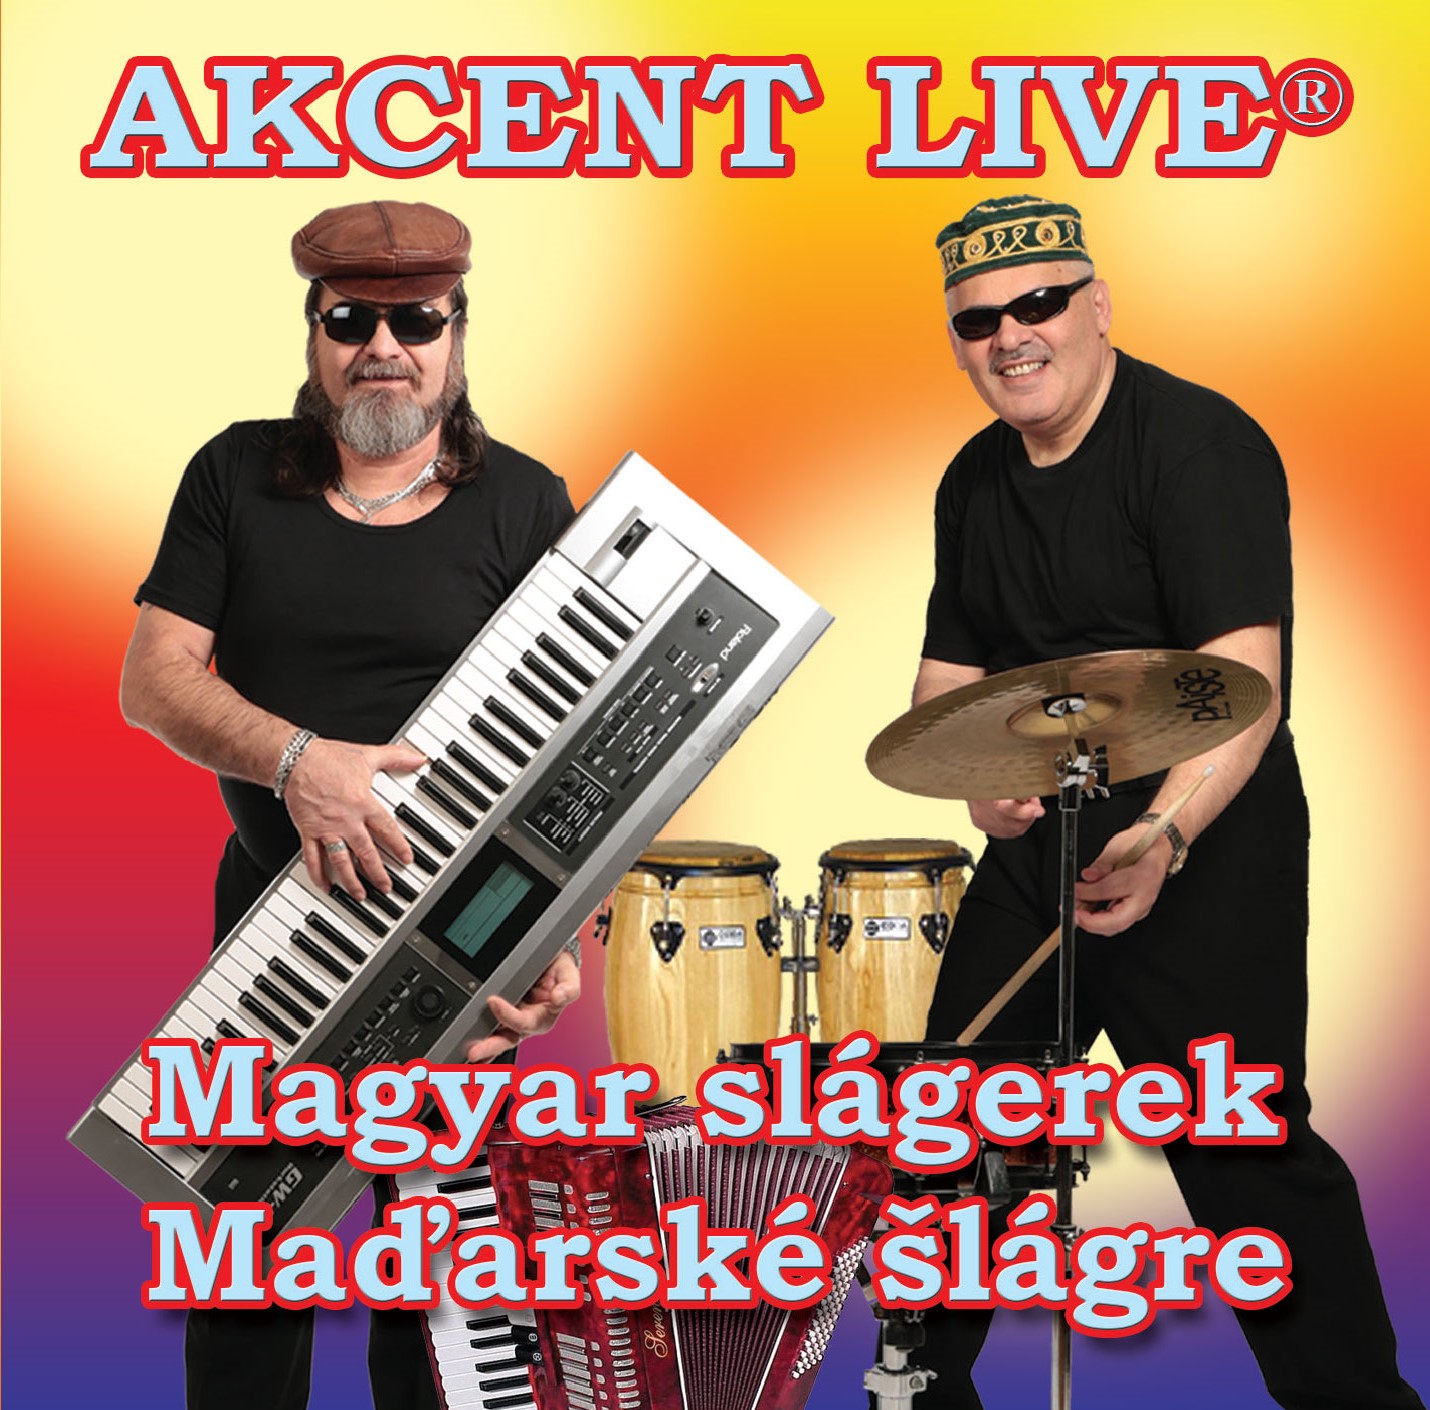  Akcent Live - Maďarské šlágre / Magyar slágerek (cd)